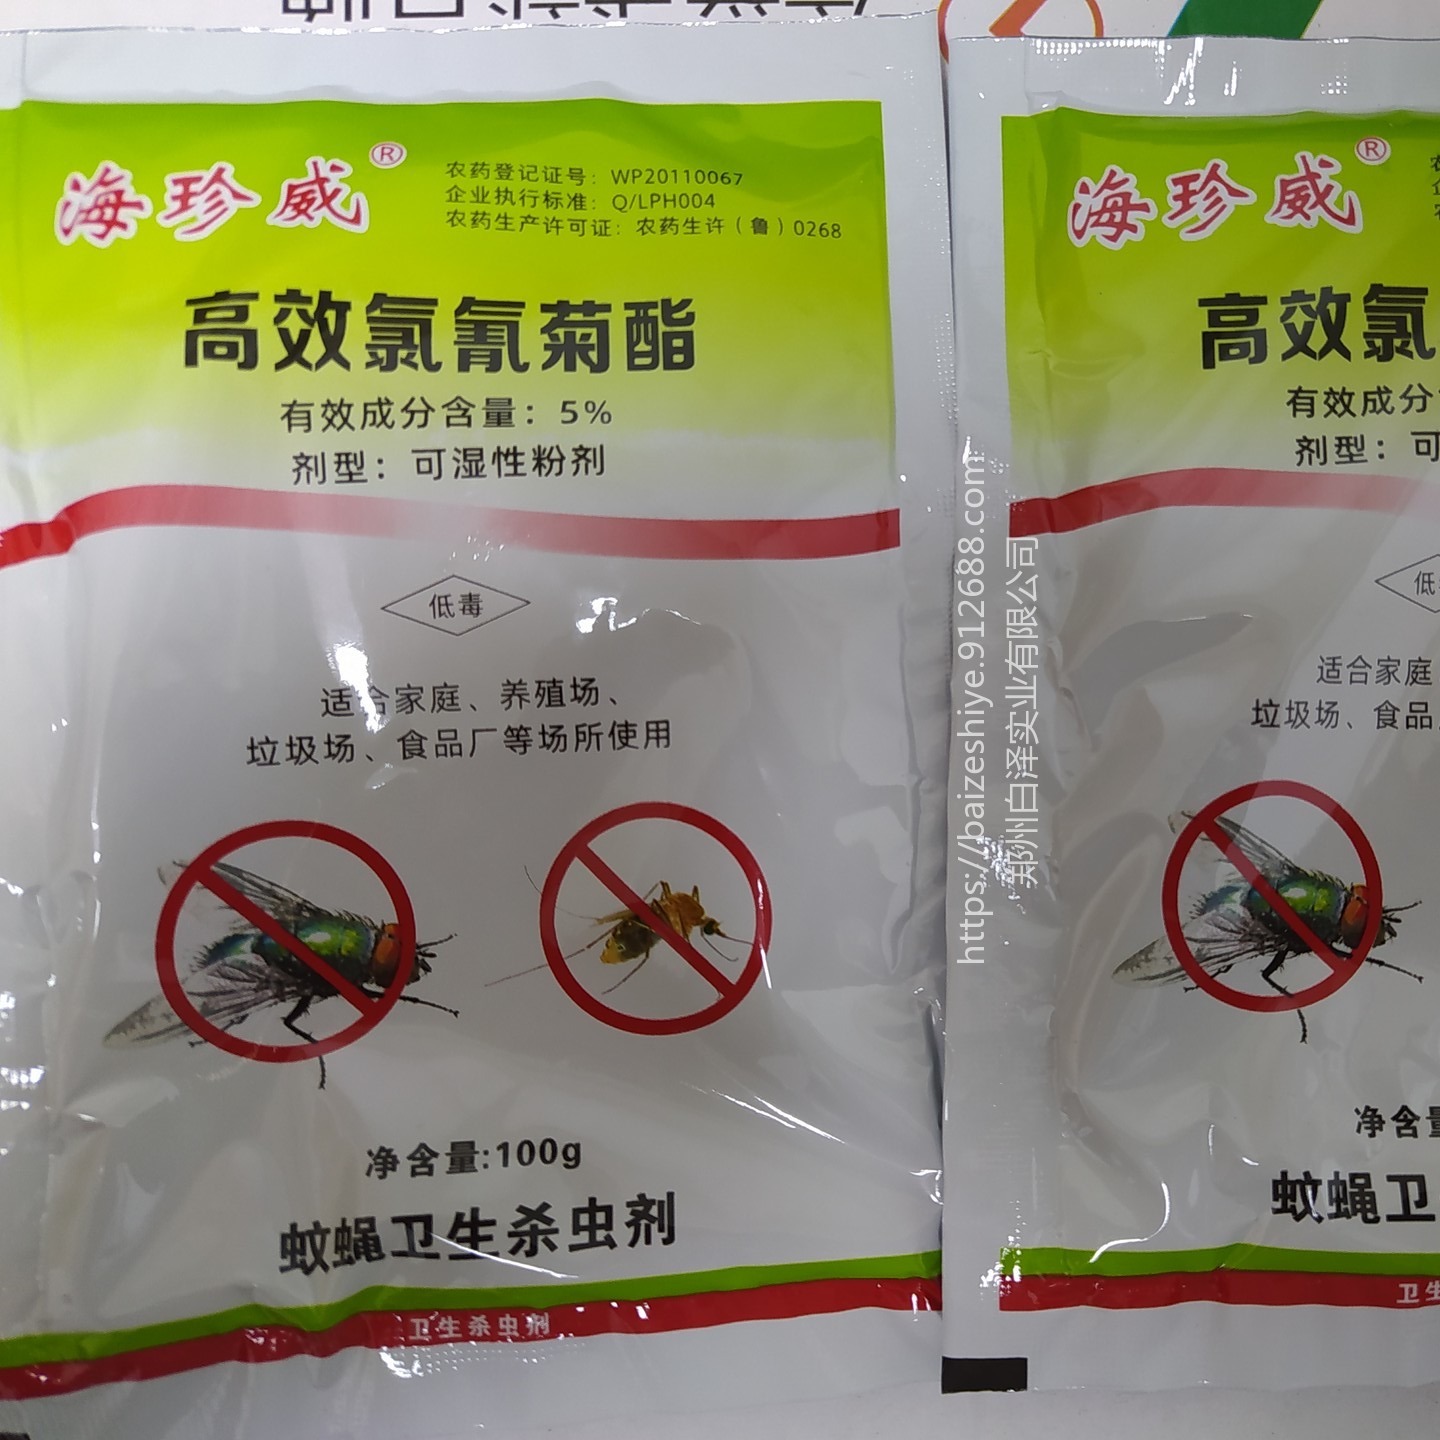 内蒙古蚊蝇专用药 养牛苍蝇药批发  家用养殖两用海珍威